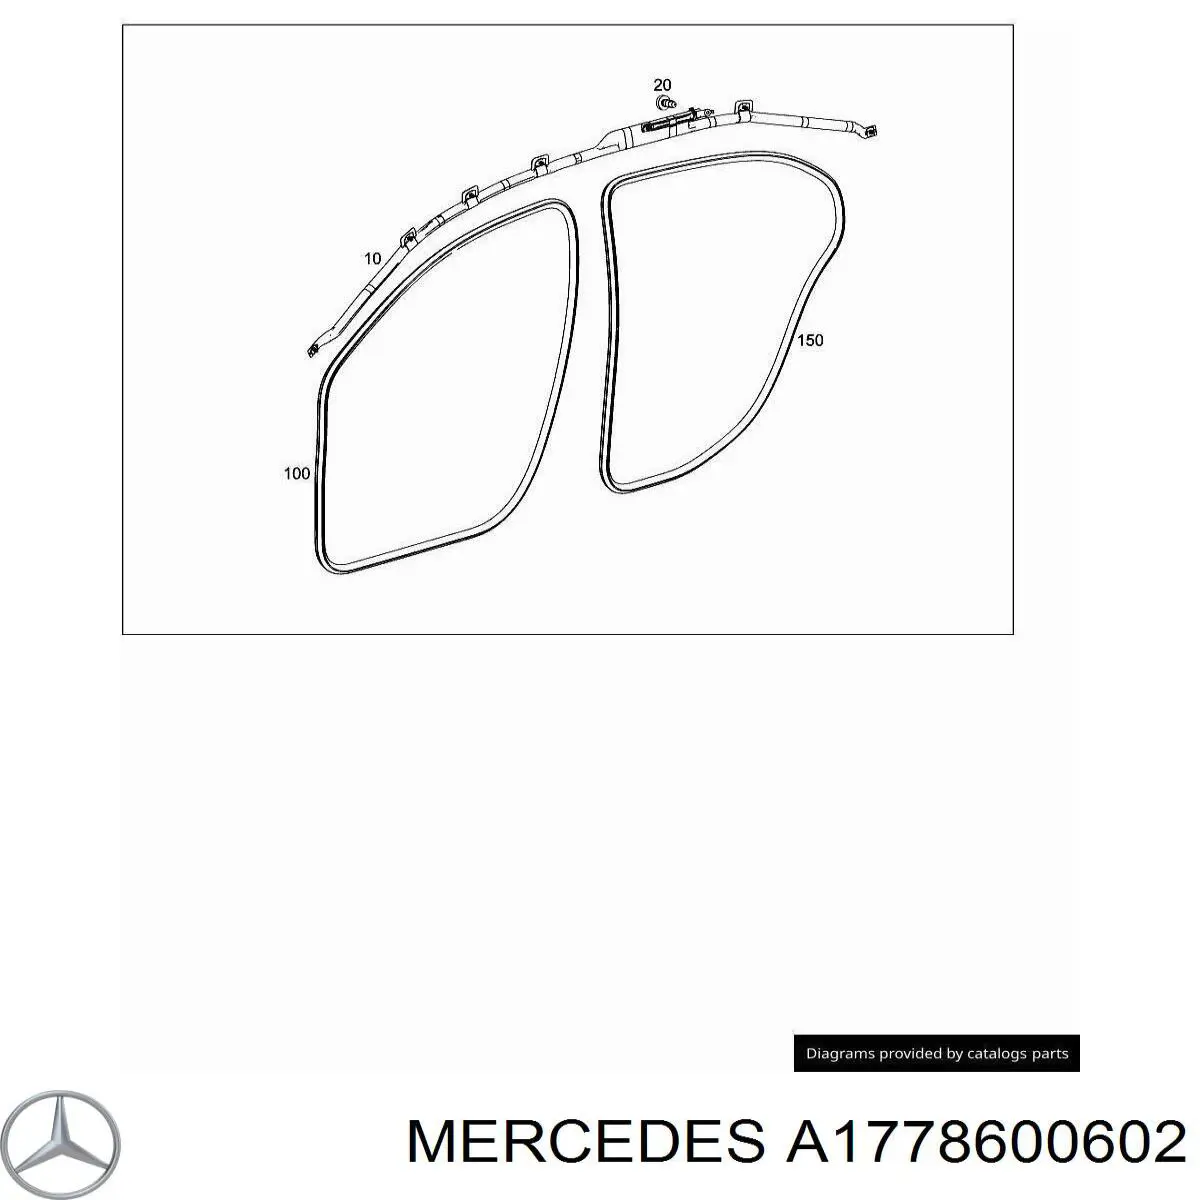 1778600602 Mercedes airbag de cortina lateral derecha